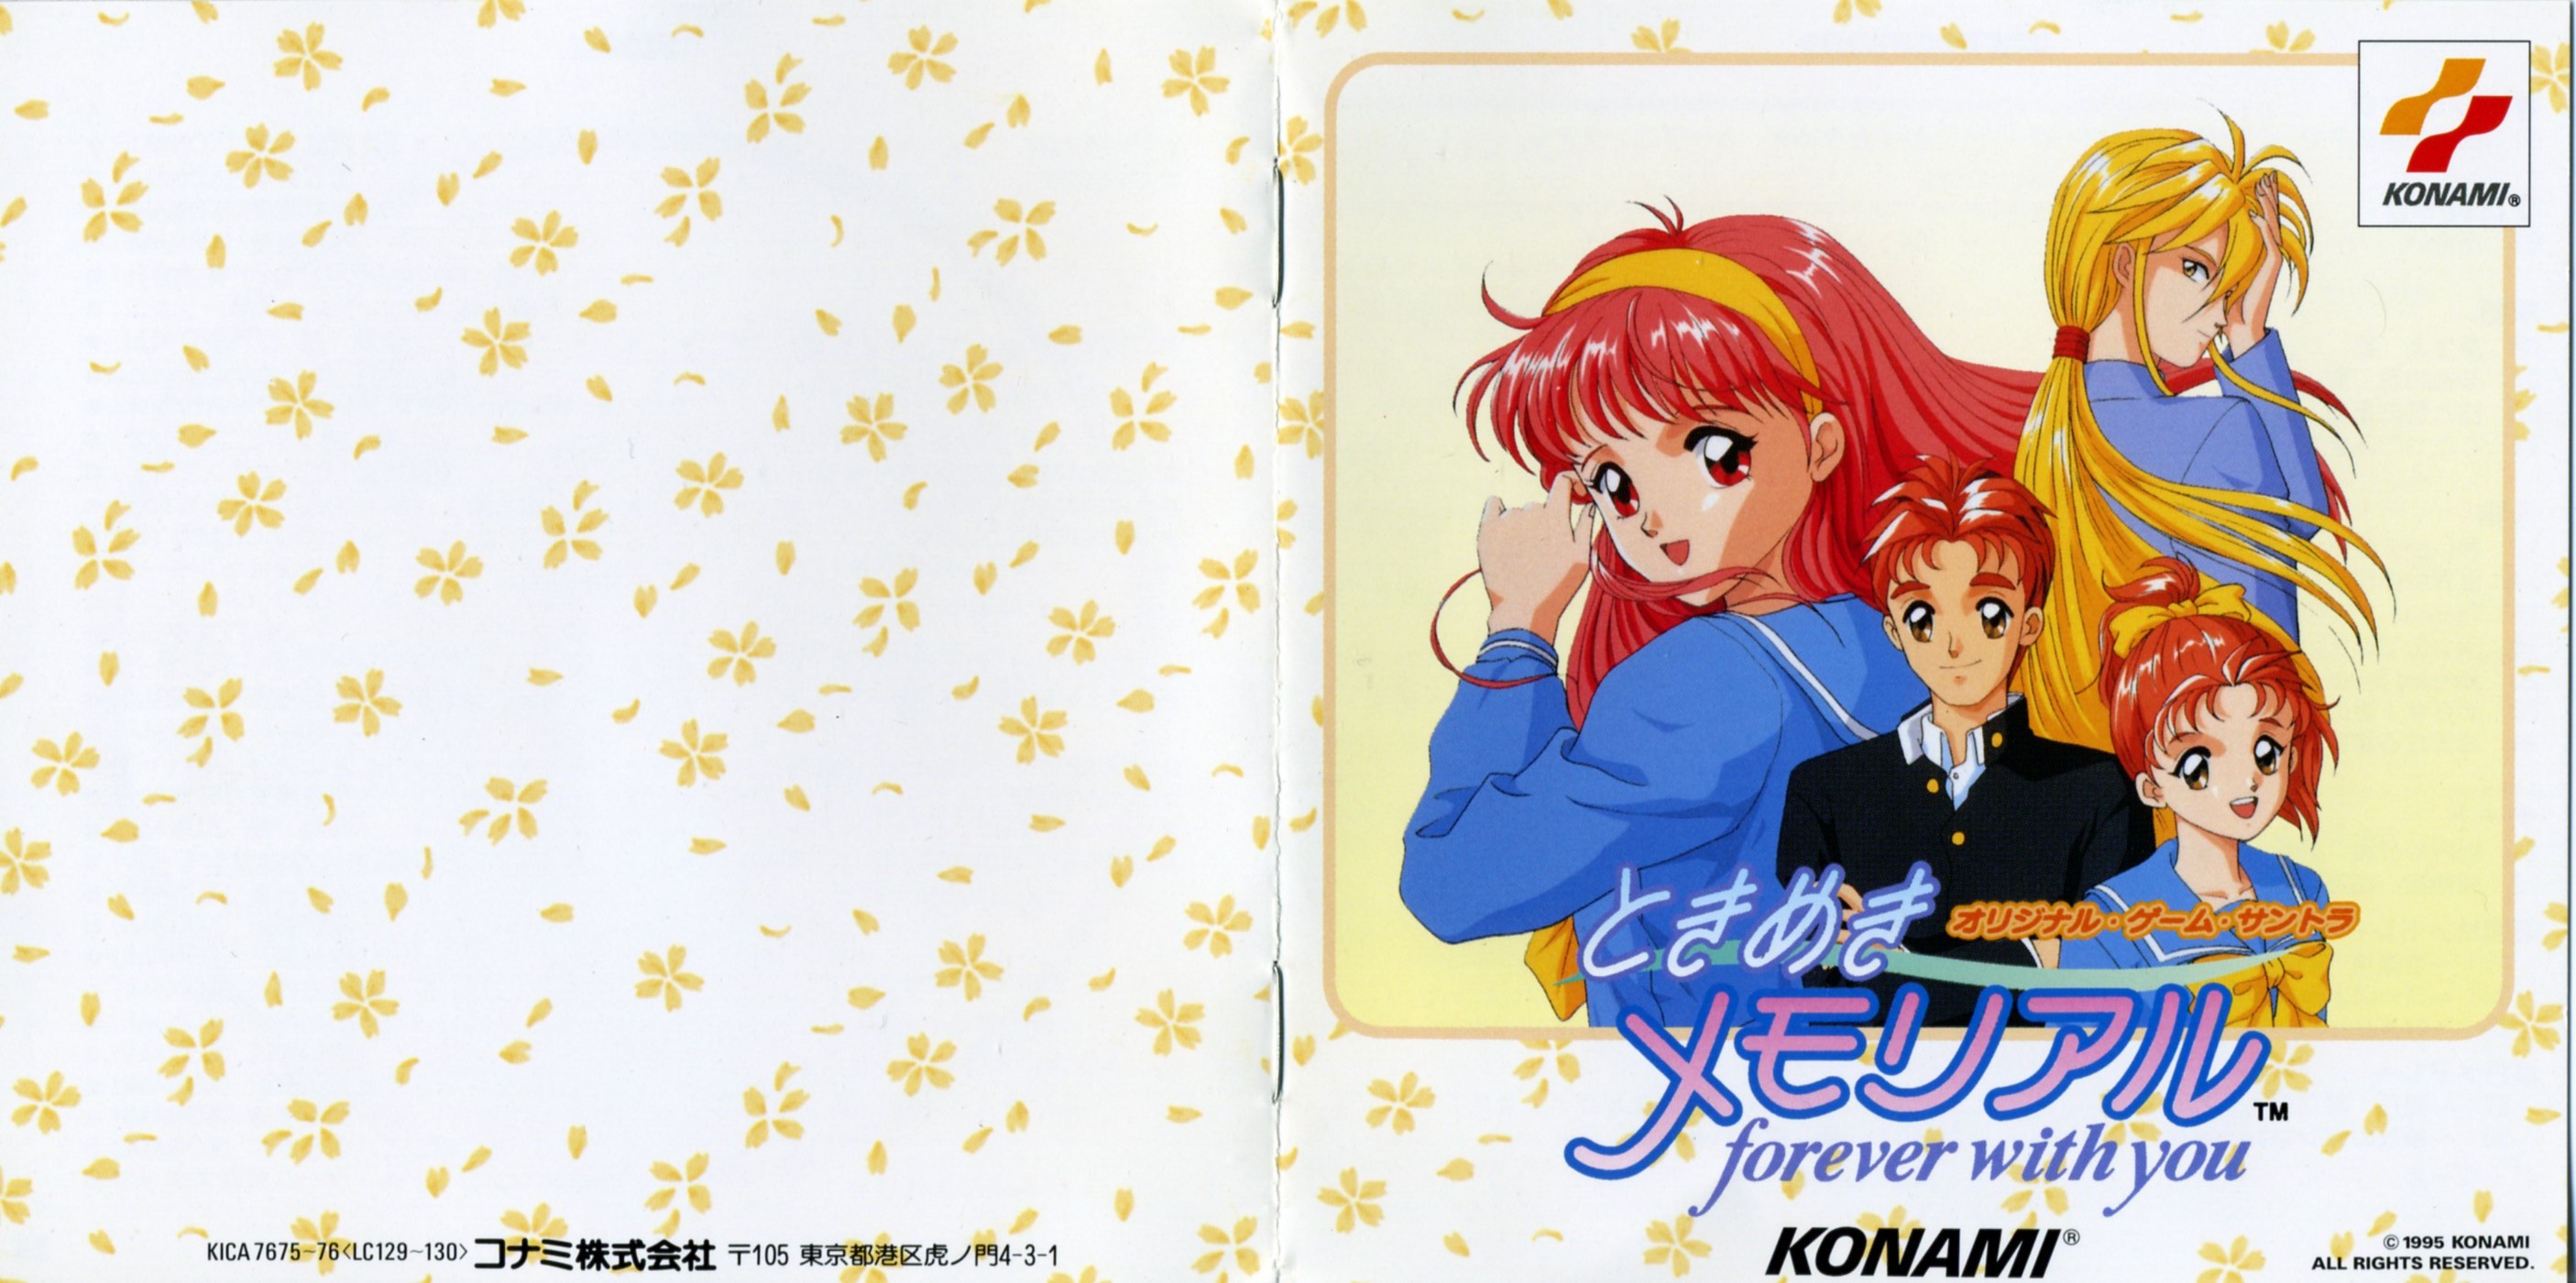 Tokimeki Memorial ~forever with you~ Original Game Soundtrack (1995) MP3 -  Download Tokimeki Memorial ~forever with you~ Original Game Soundtrack  (1995) Soundtracks for FREE!